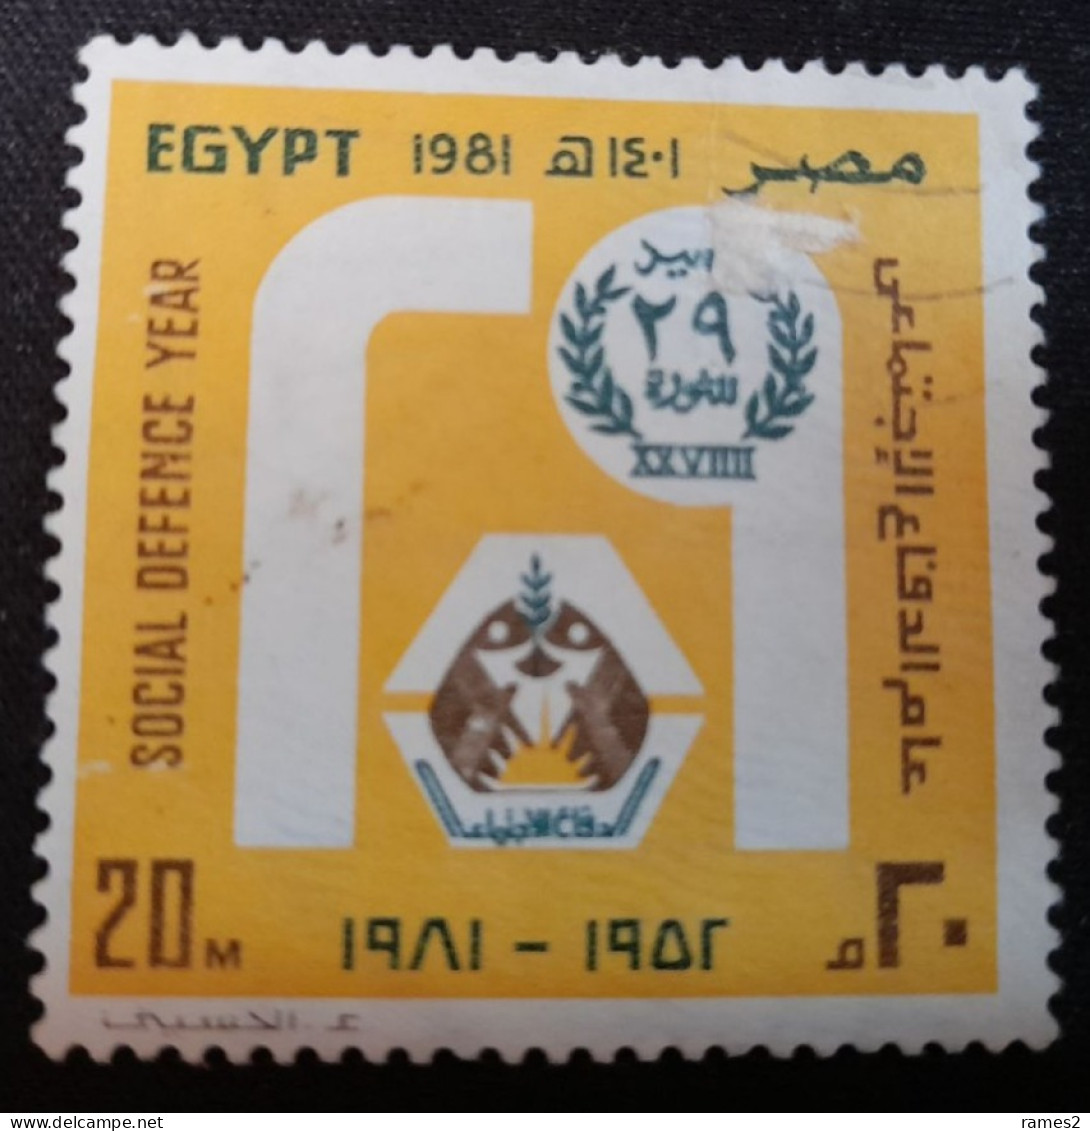 Egypte > 1953-.... République > 1980-89 > Oblitérés N° 1146 - Gebraucht